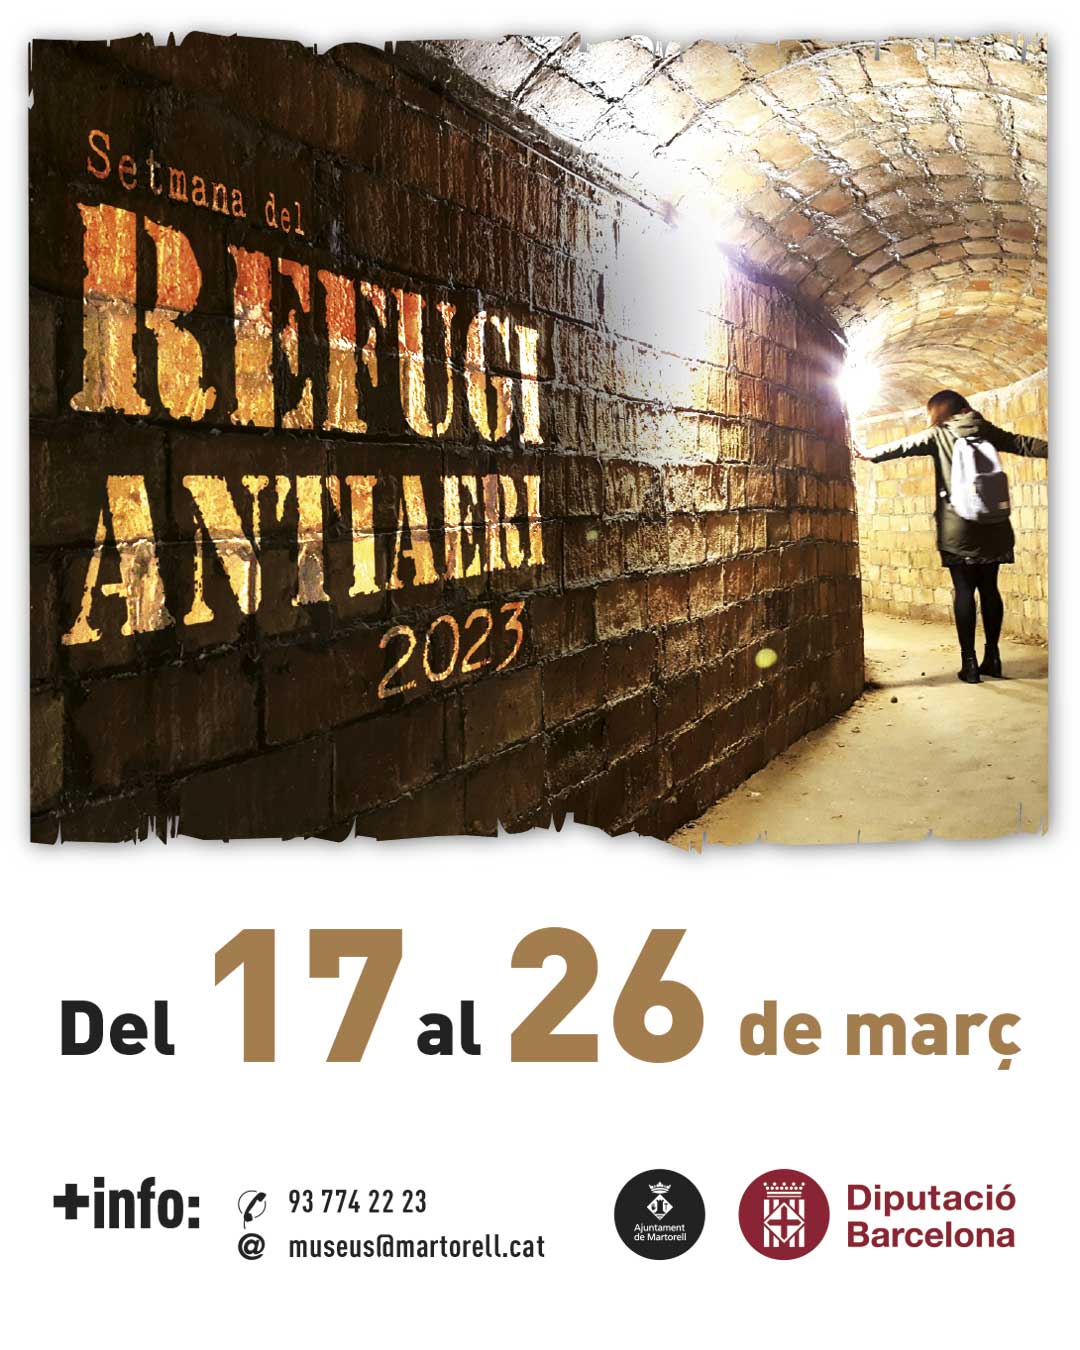 Comença la Setmana del Refugi Antiaeri per enriquir la memòria històrica